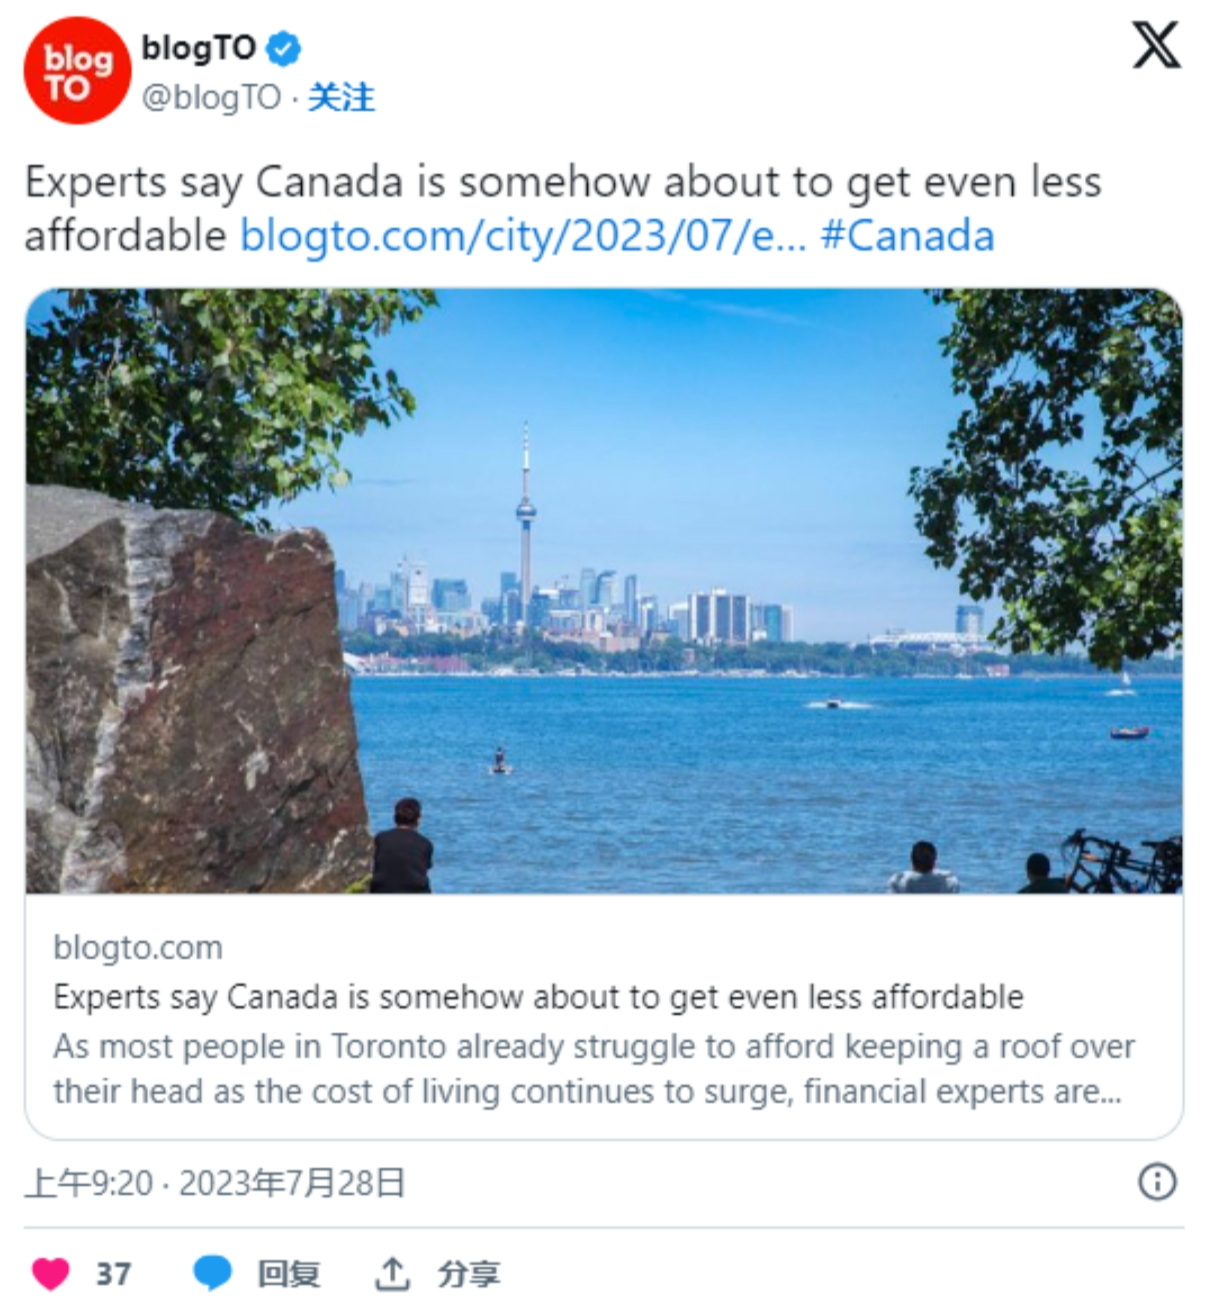 加拿大人一直承受着难以想象的高生活成本